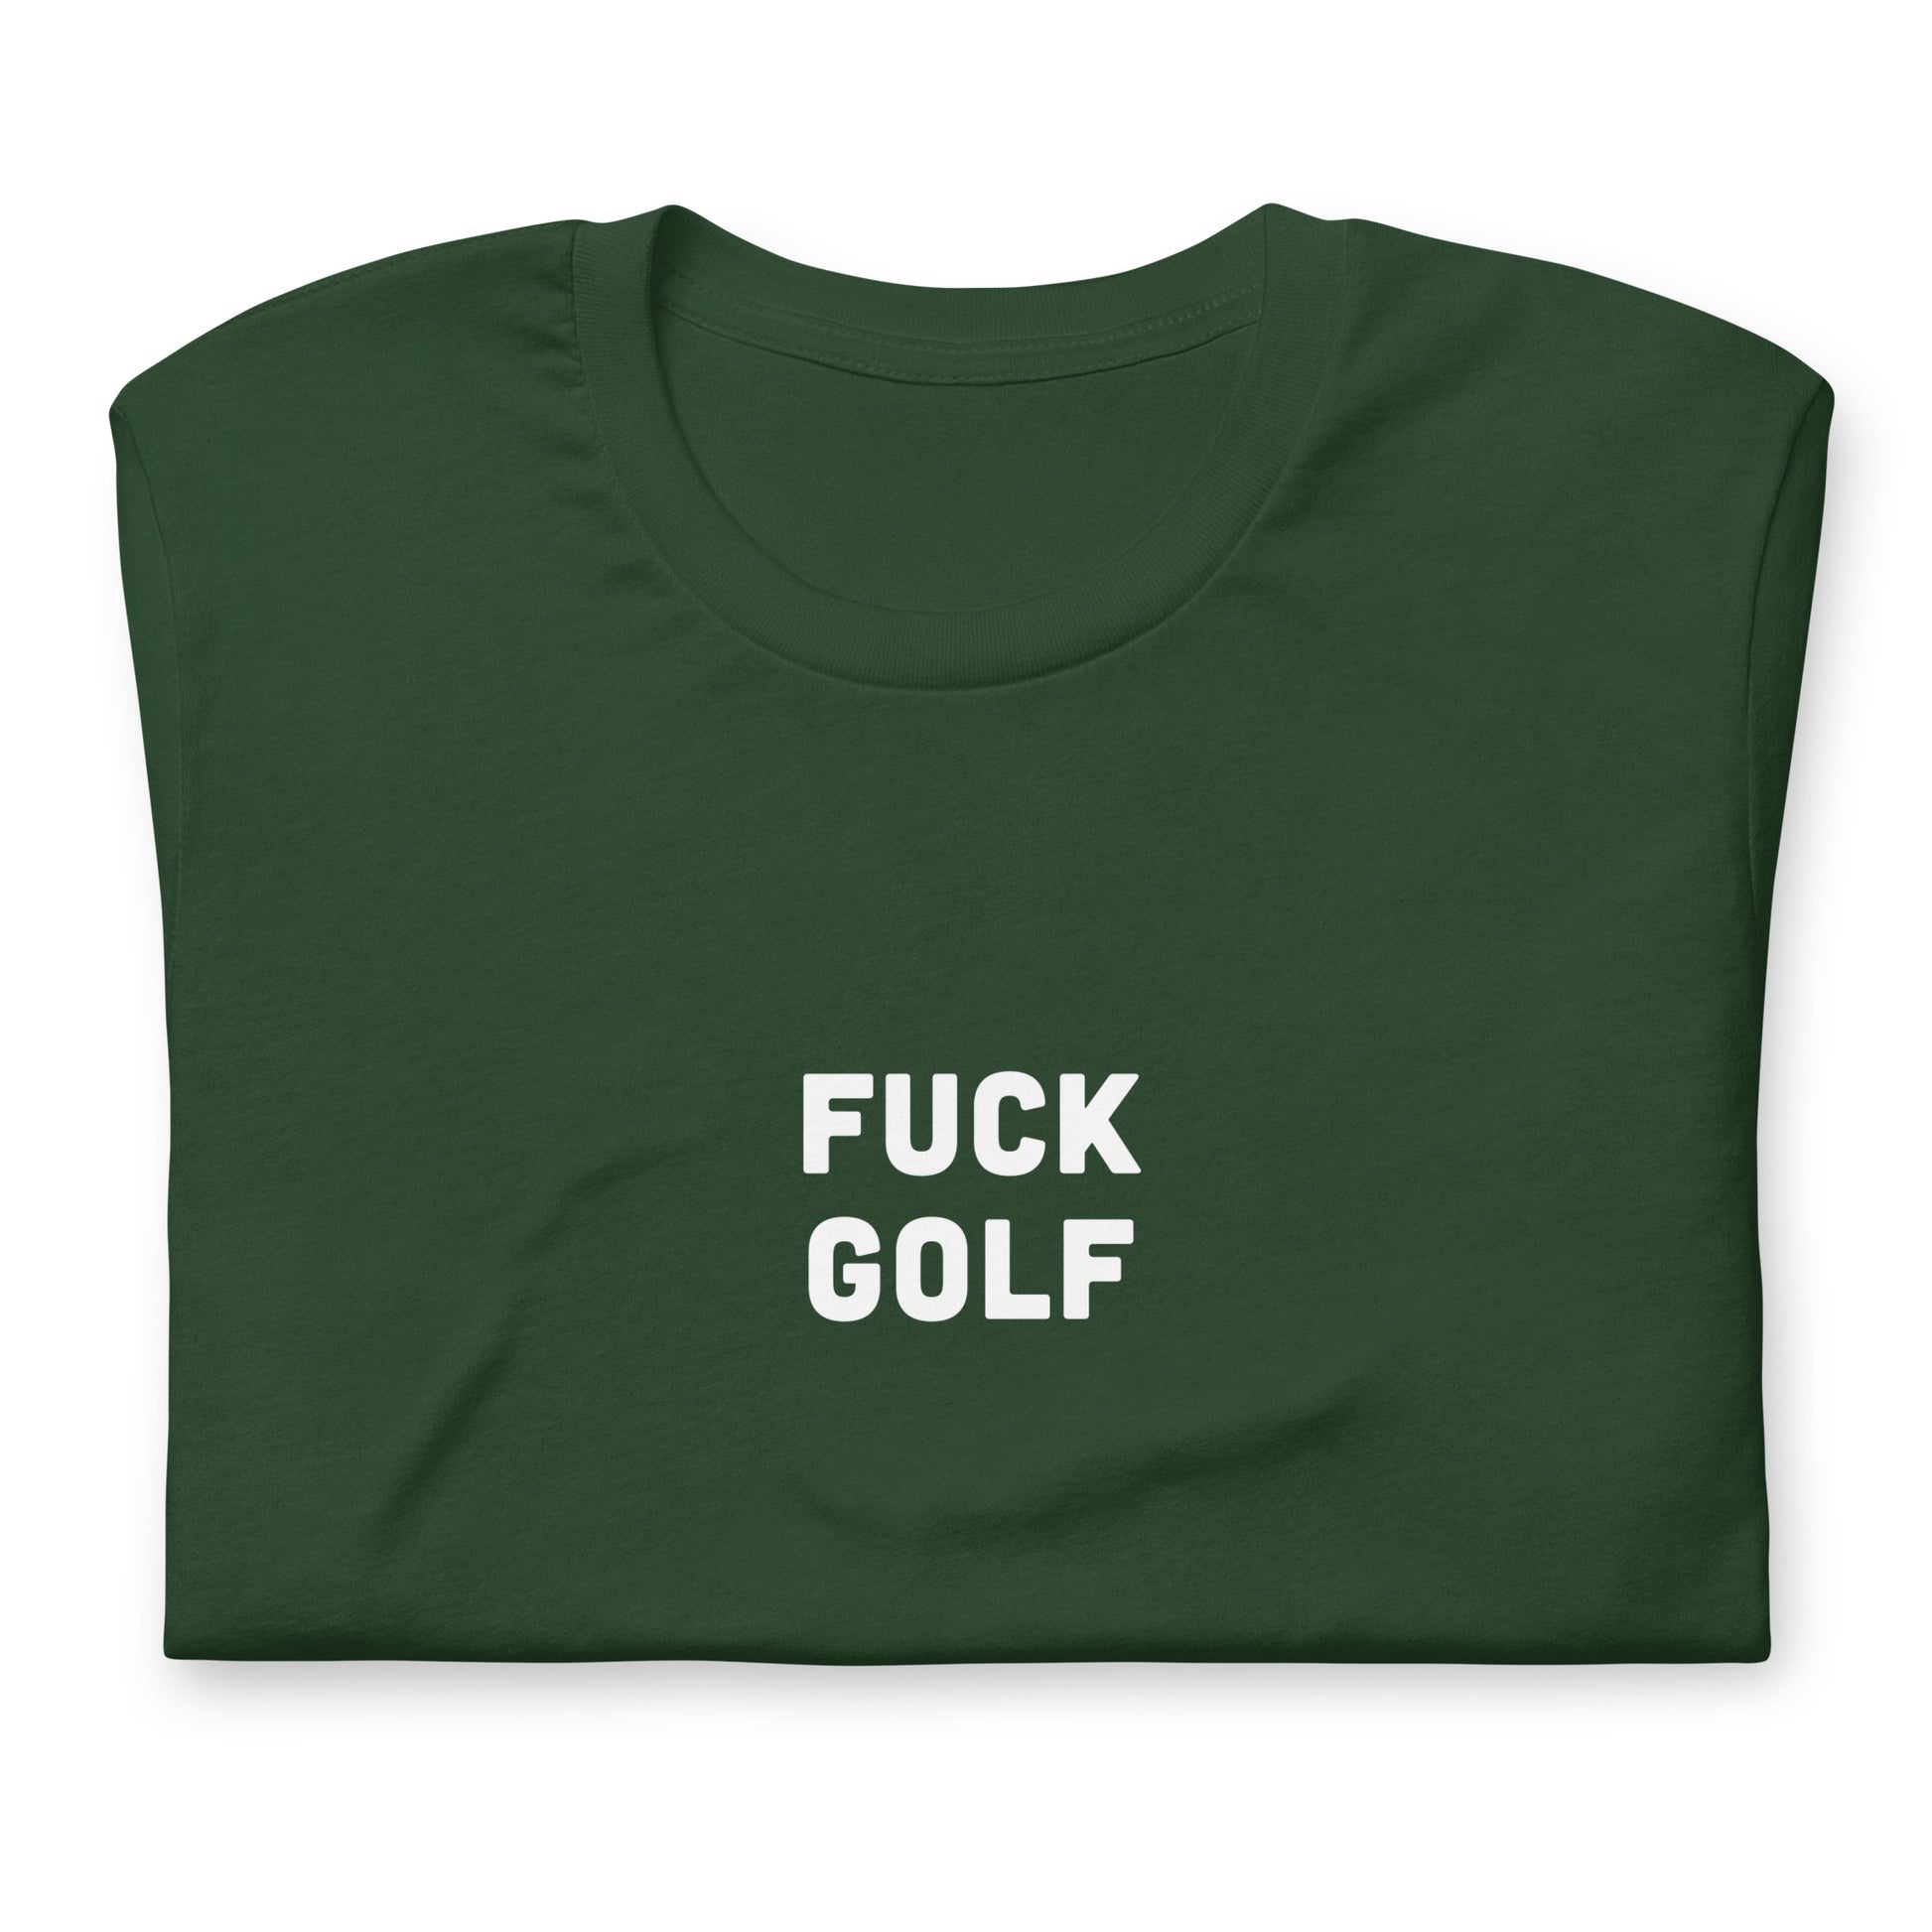 Fuck Golf T-Shirt Size XL Color Black